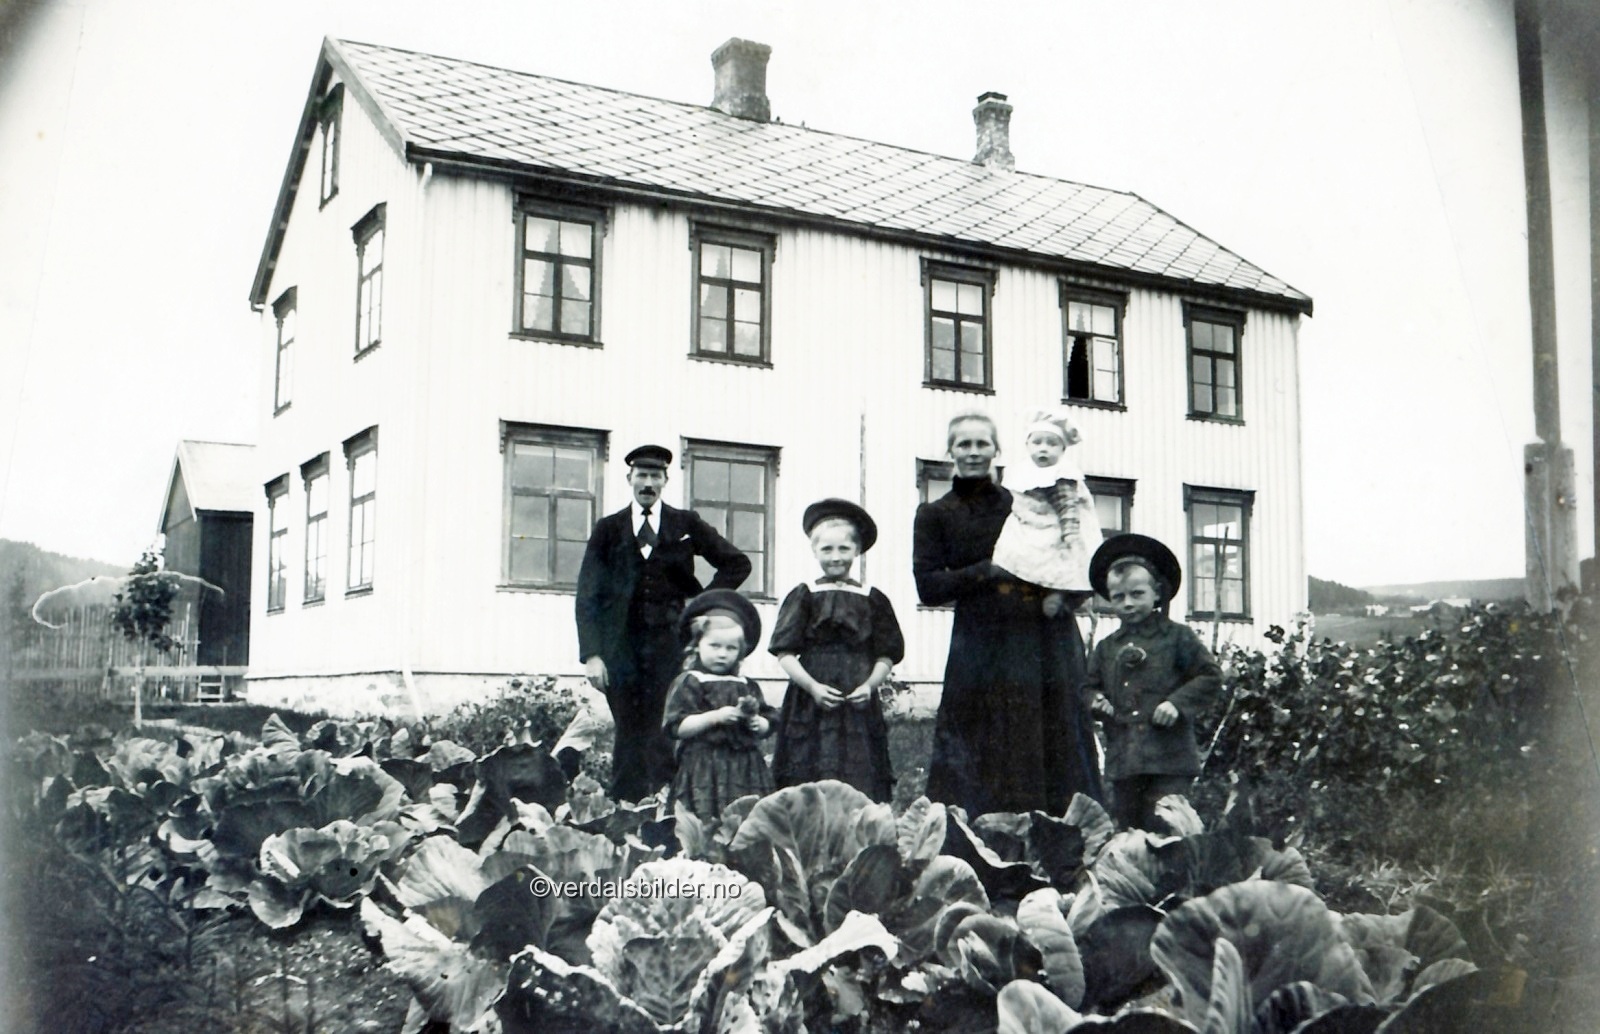 Kluken var lærer i Sjøbygda krets i perioden 1906 -1942. Bildet tilhører Verdal Historielag. Ukjent forograf.